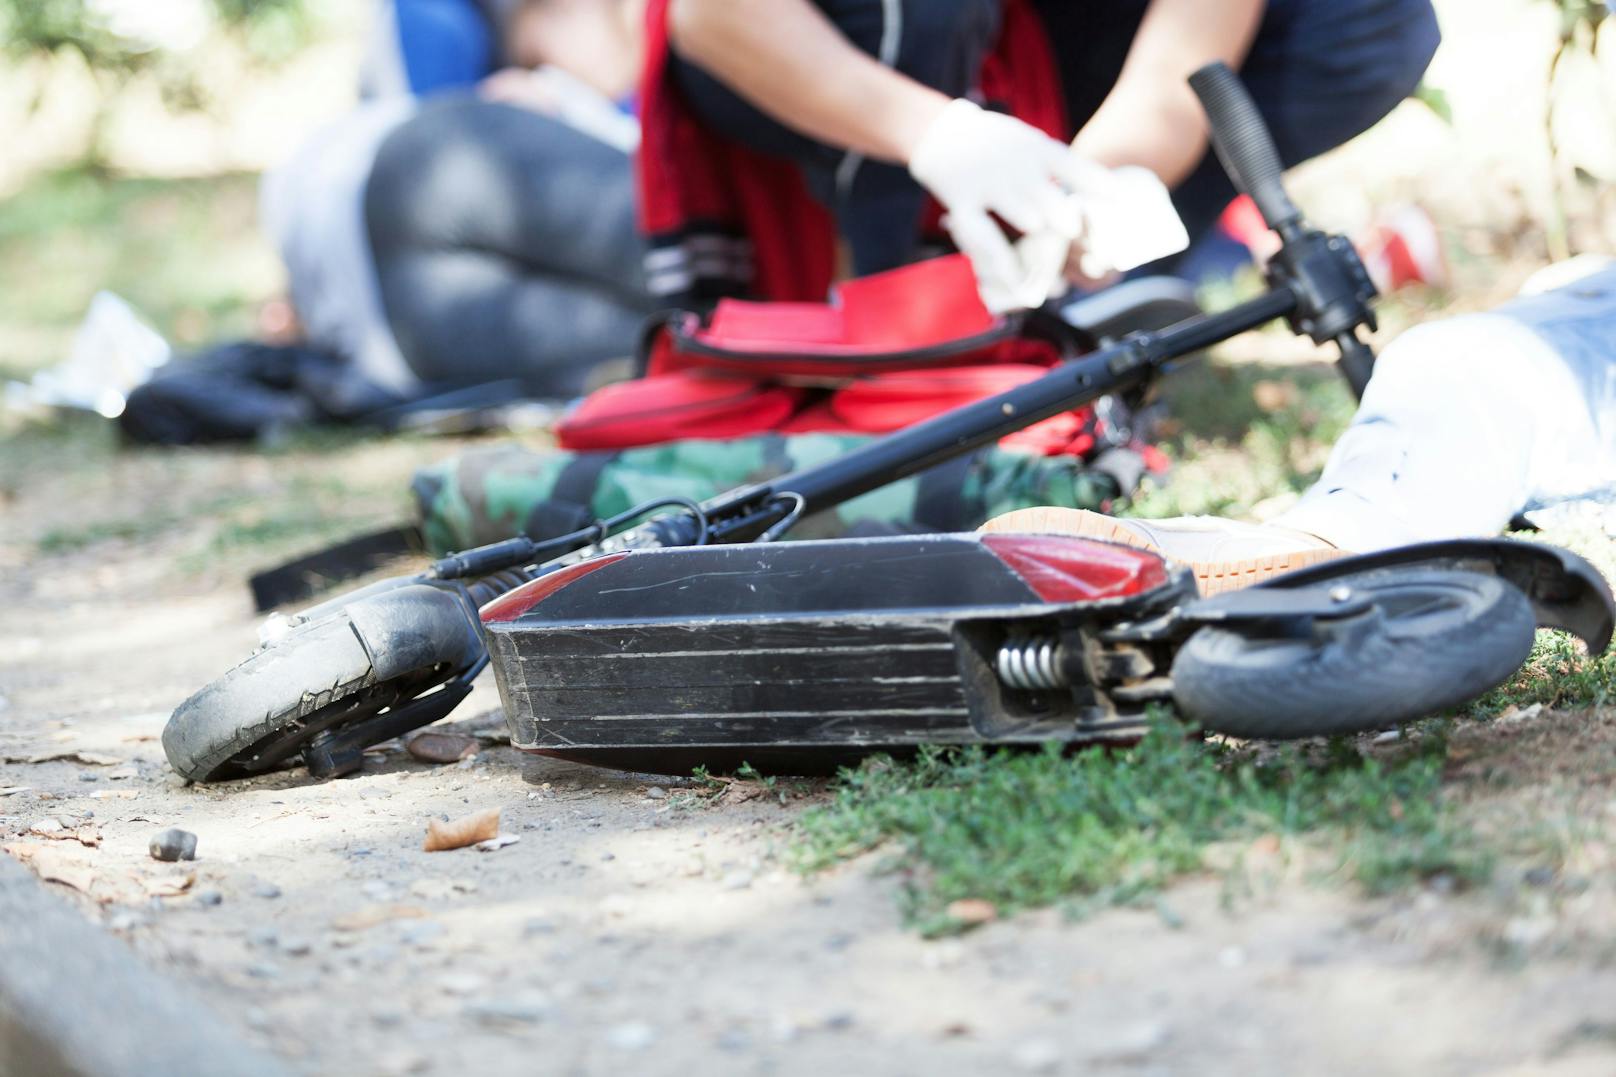 E-Scooter in Wien mit 102 km/h von der Polizei geblitzt